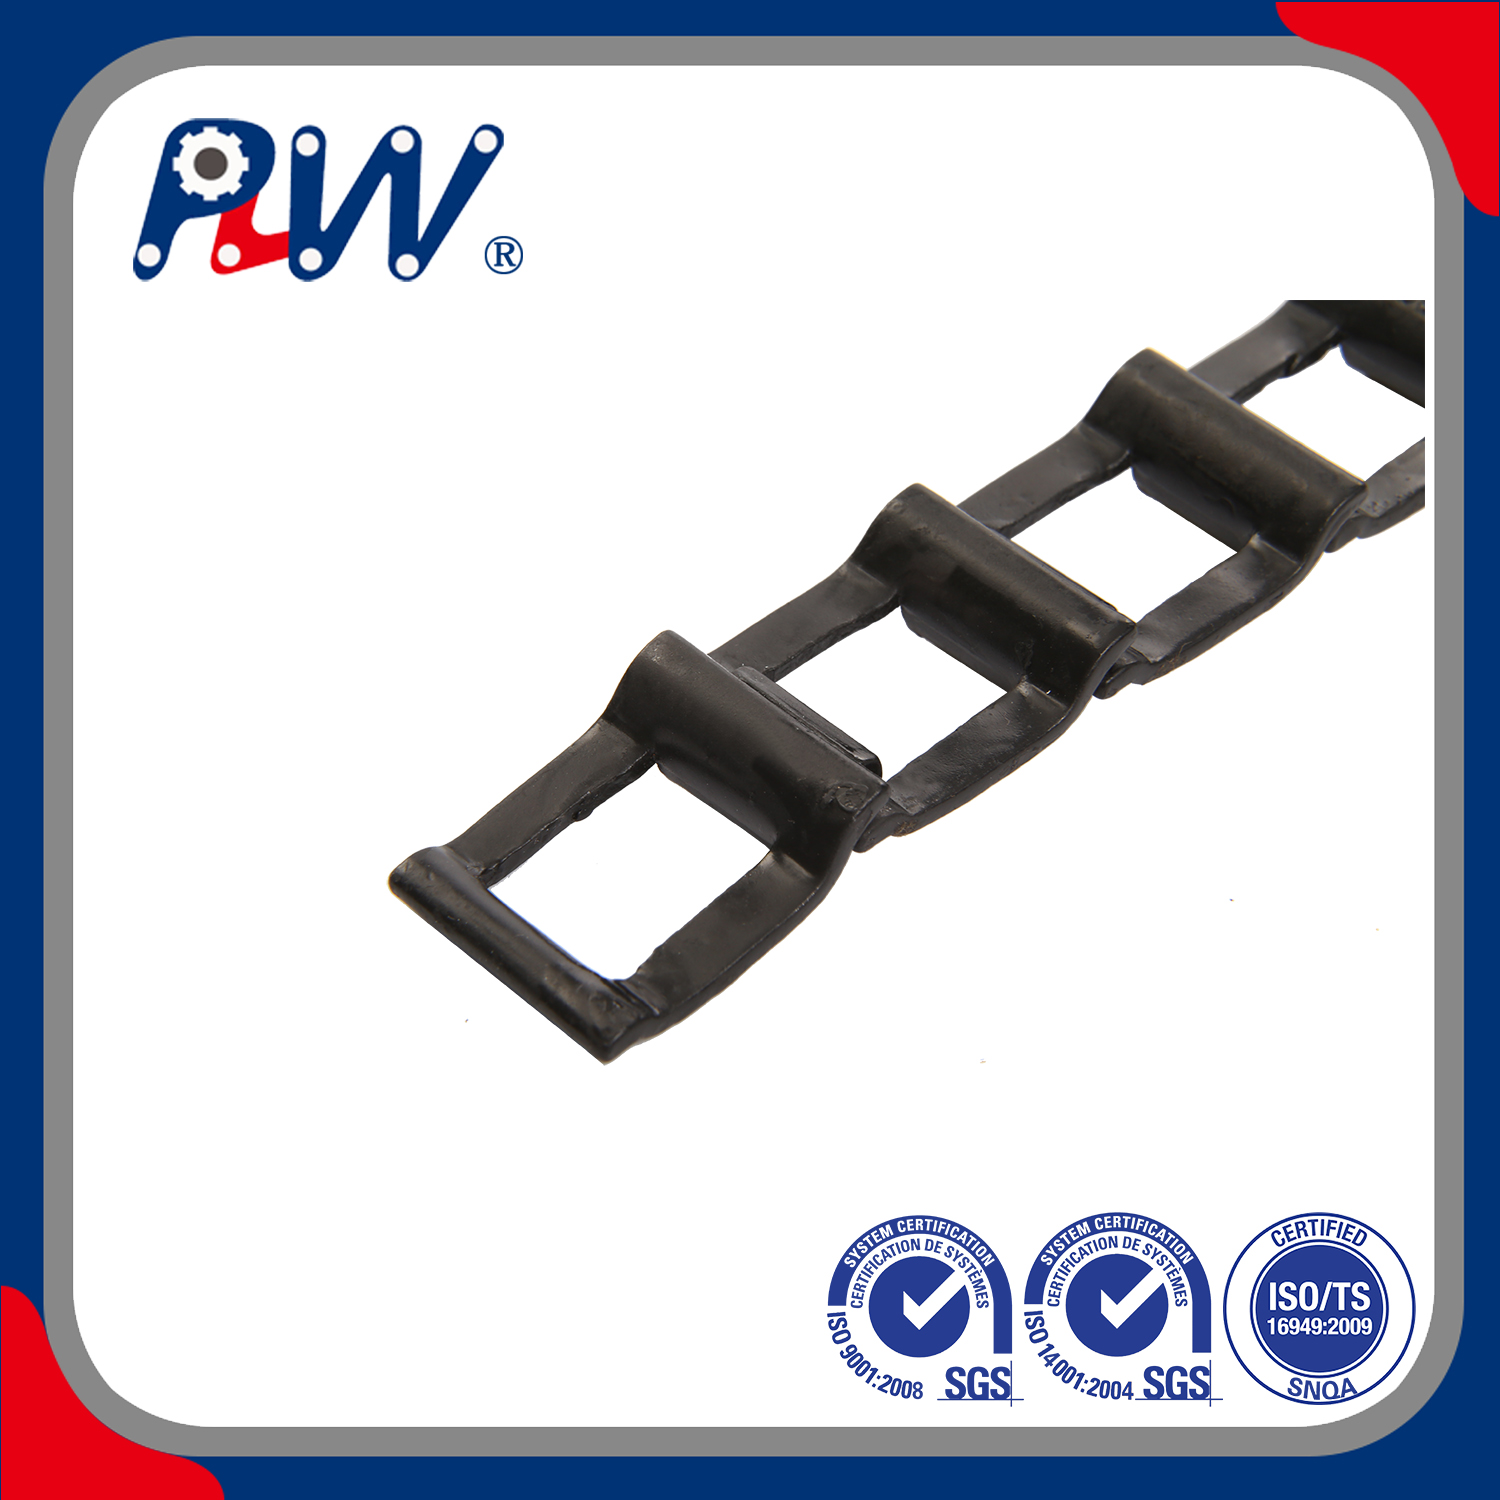 Cadena desmontable de acero de hierro fundido de alta calidad y entrega rápida y hecha a pedido (25, 32, 32 W) para sistema transportador